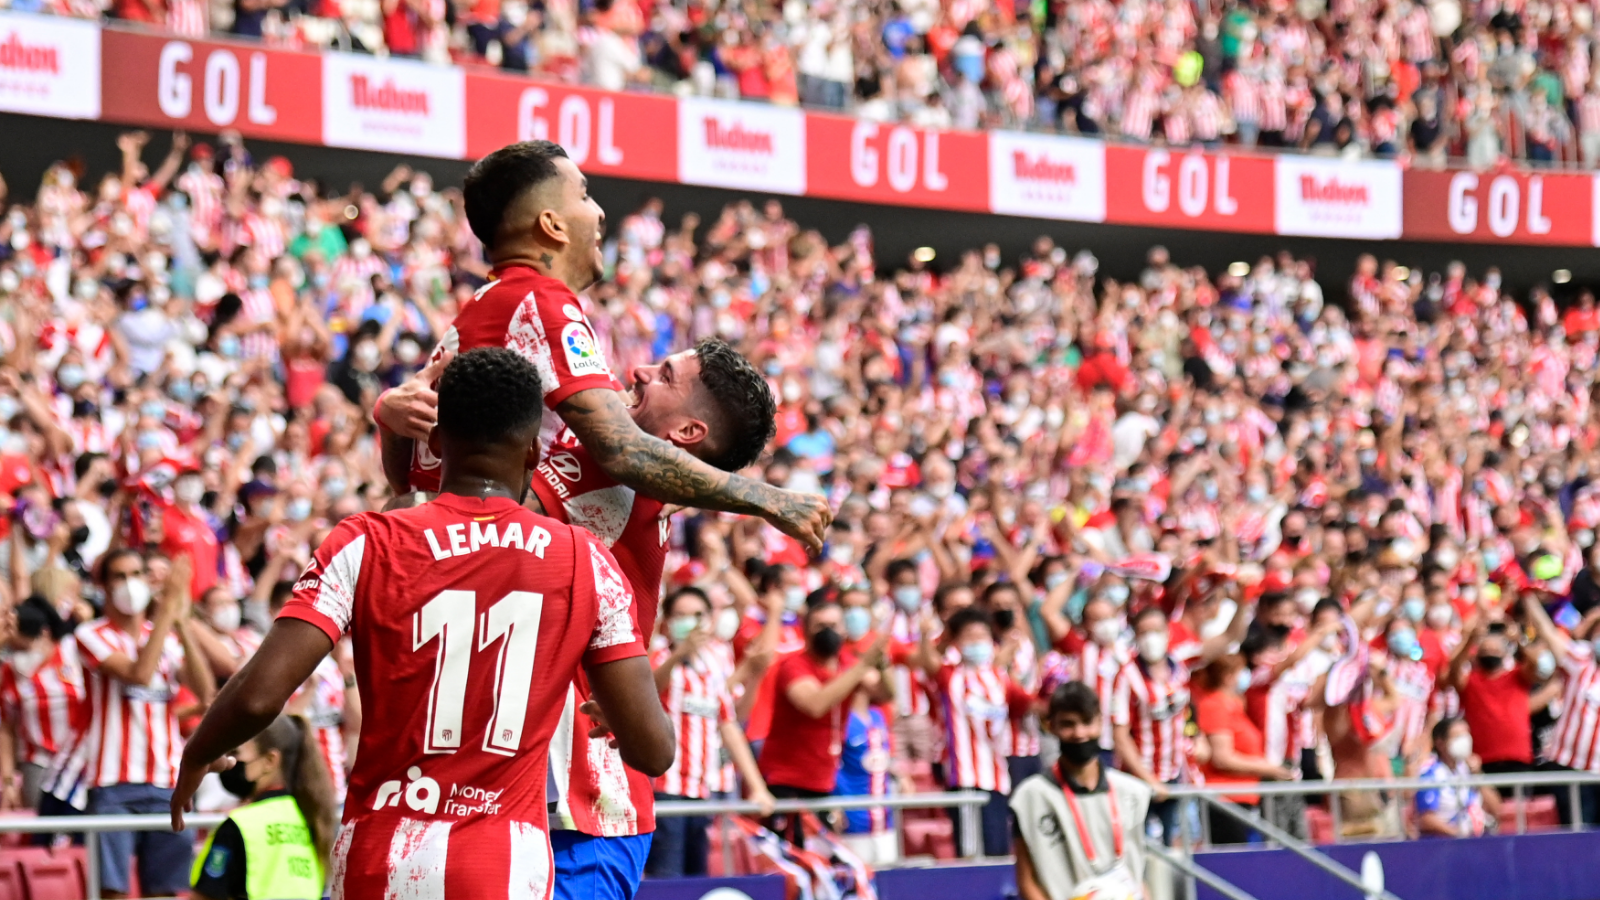 A qué hora juega el Atlético hoy? | Goal.com Espana